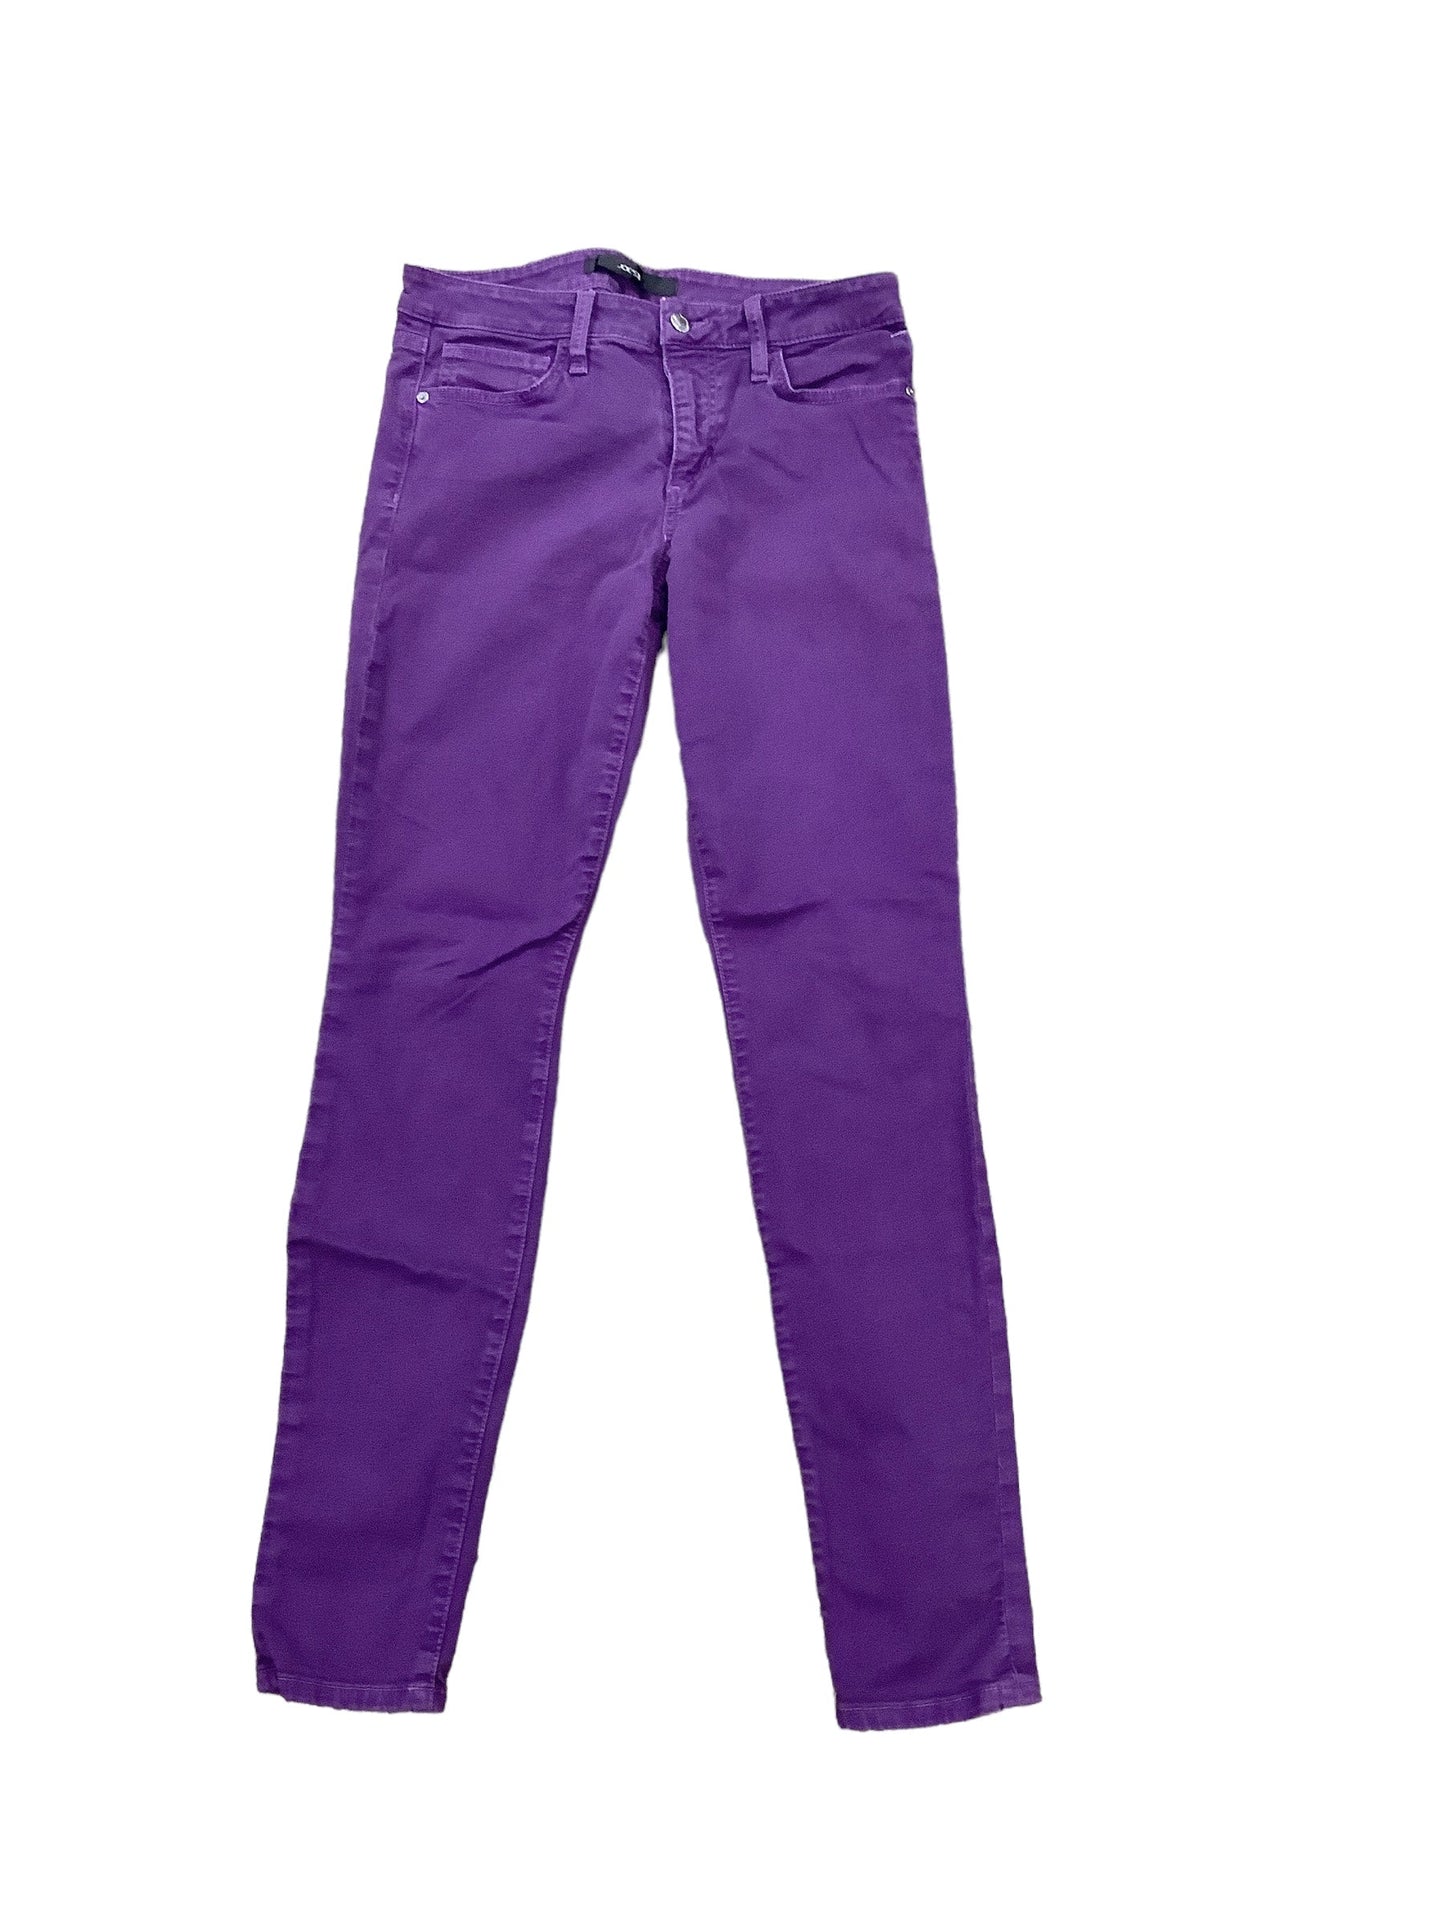 Purple Jeans Designer Joes Jeans, Size 30w